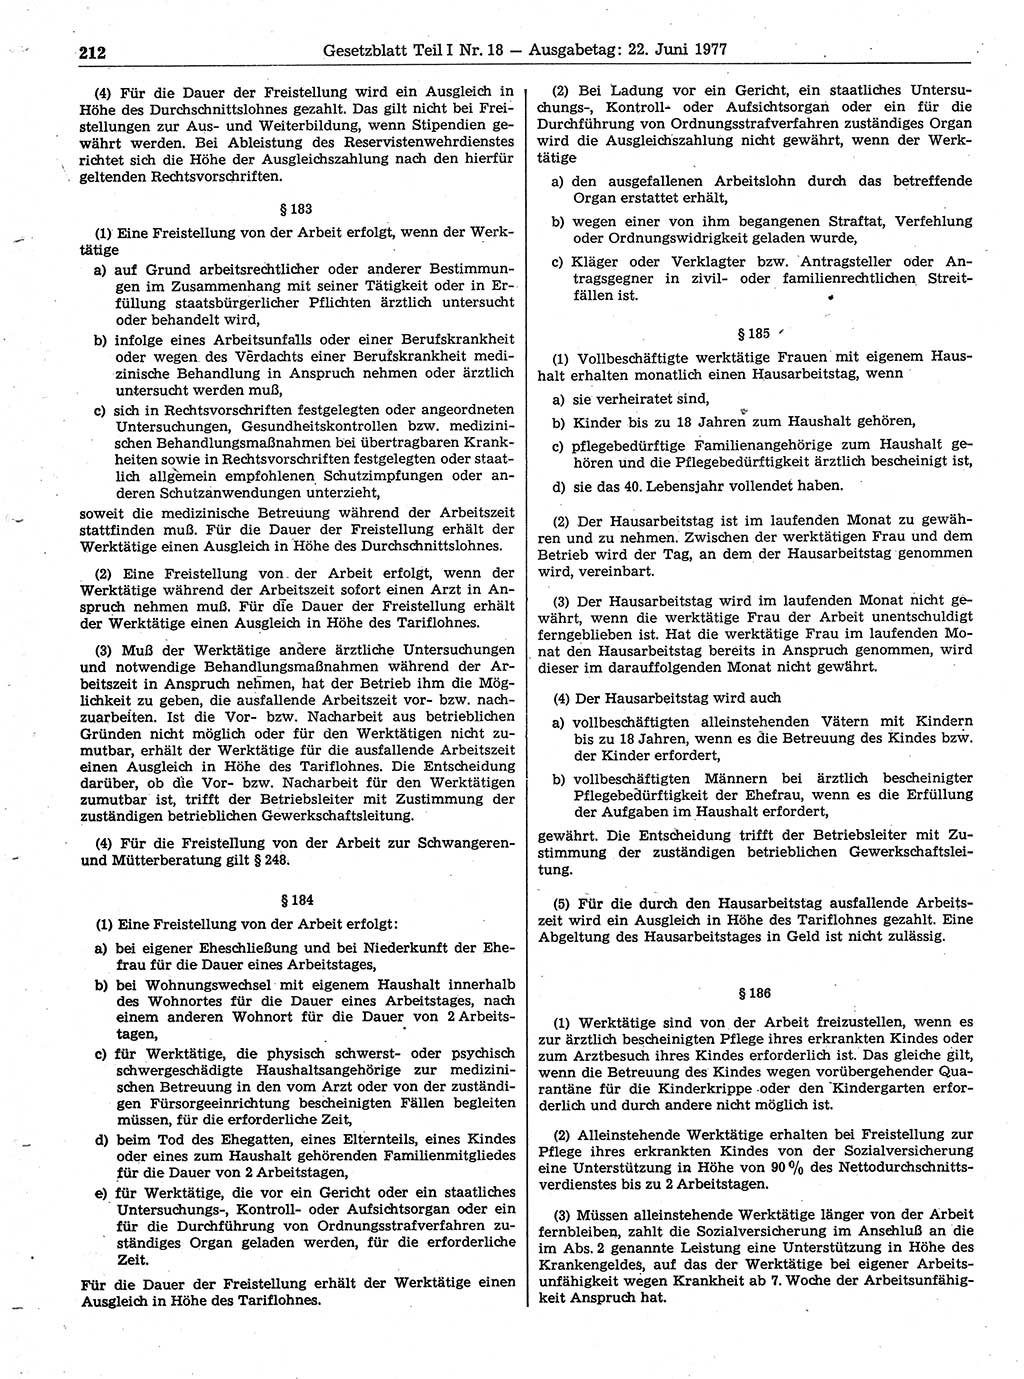 Gesetzblatt (GBl.) der Deutschen Demokratischen Republik (DDR) Teil Ⅰ 1977, Seite 212 (GBl. DDR Ⅰ 1977, S. 212)